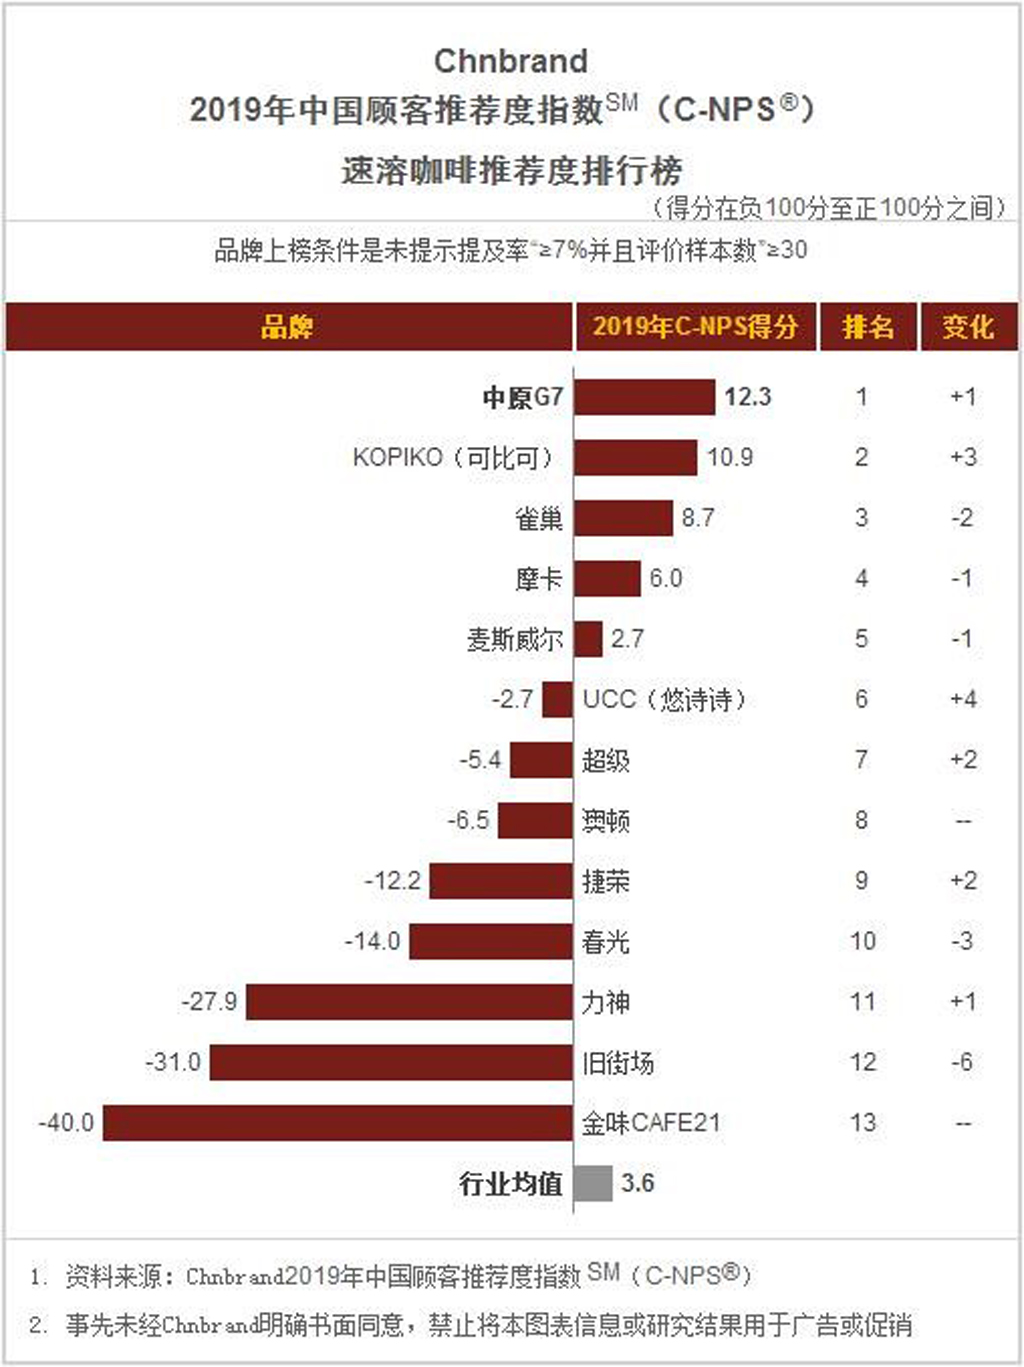 G7 đứng đầu bảng xếp hạng thương hiệu cà phê được yêu thích và tin dùng nhất tại Trung Quốc